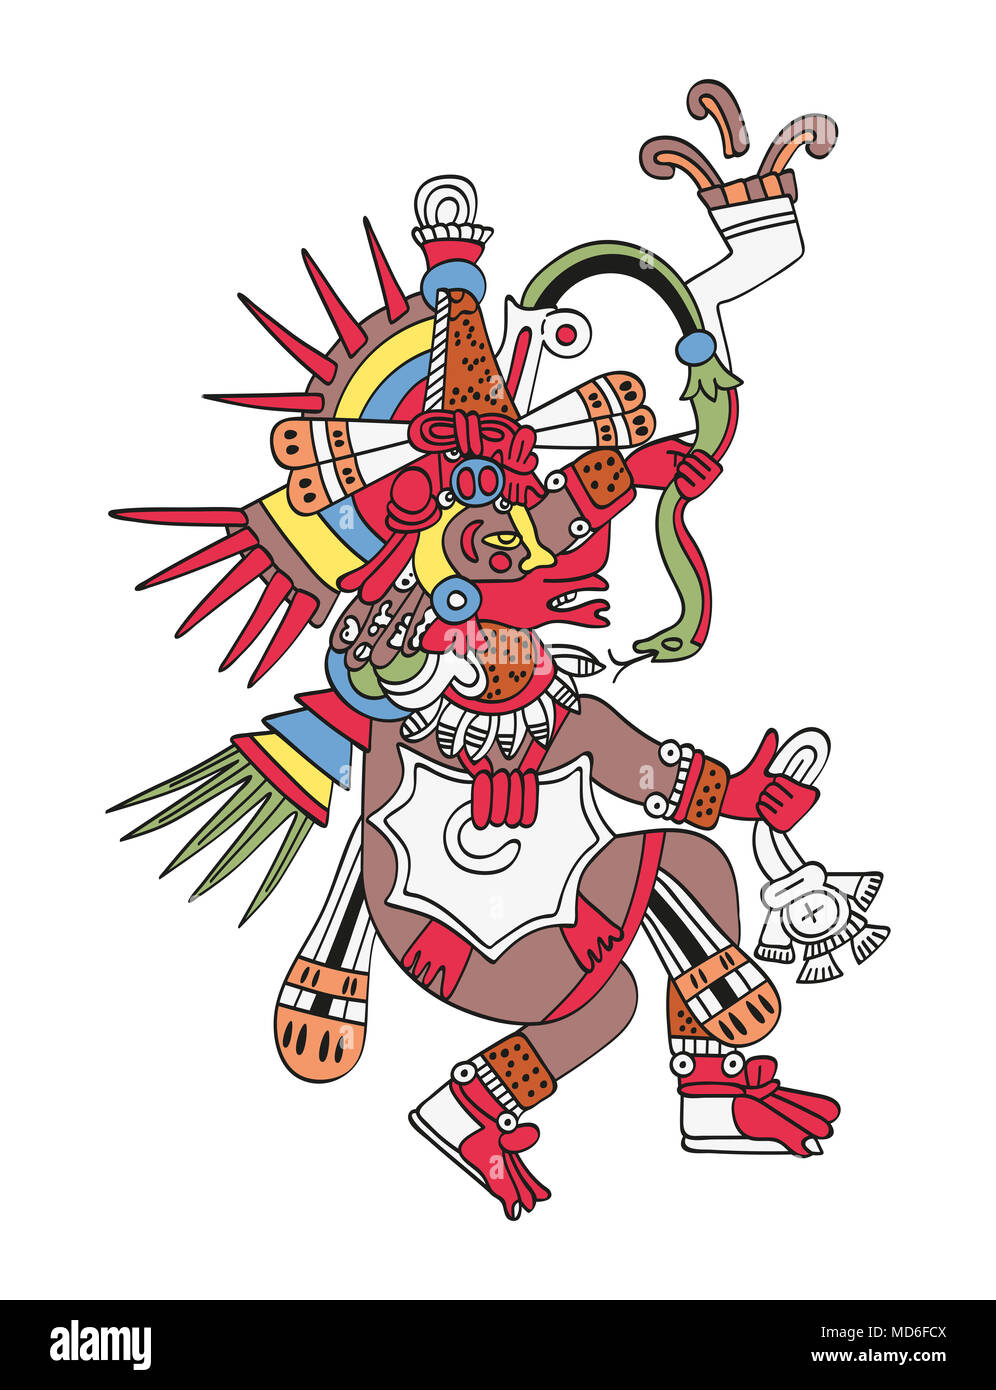 Quetzalcoatl, le serpent à plumes. Dieu du vent et de la sagesse. Frère jumeau de Tezcatlipoca. Divinité comme décrite dans le manuscrit aztèque antique de la peinture. Banque D'Images